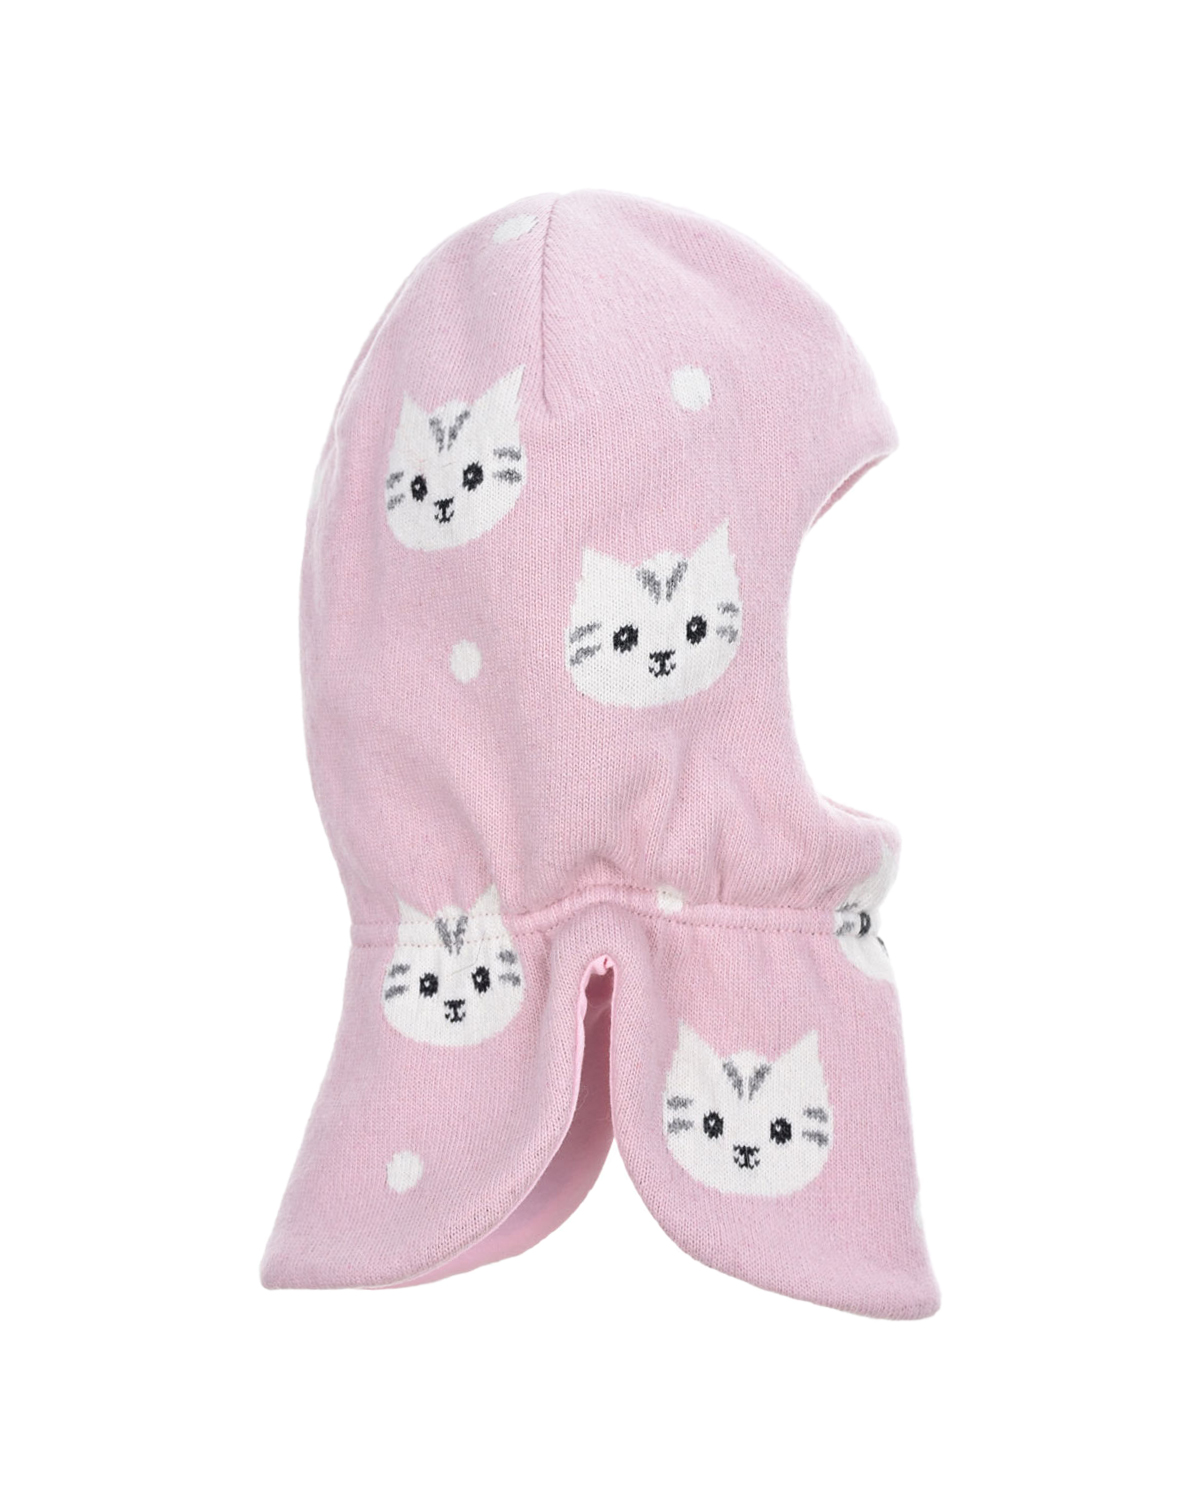 Розовая шапка-шлем с принтом "кошки" Chobi детская, размер 44/46, цвет розовый - фото 1